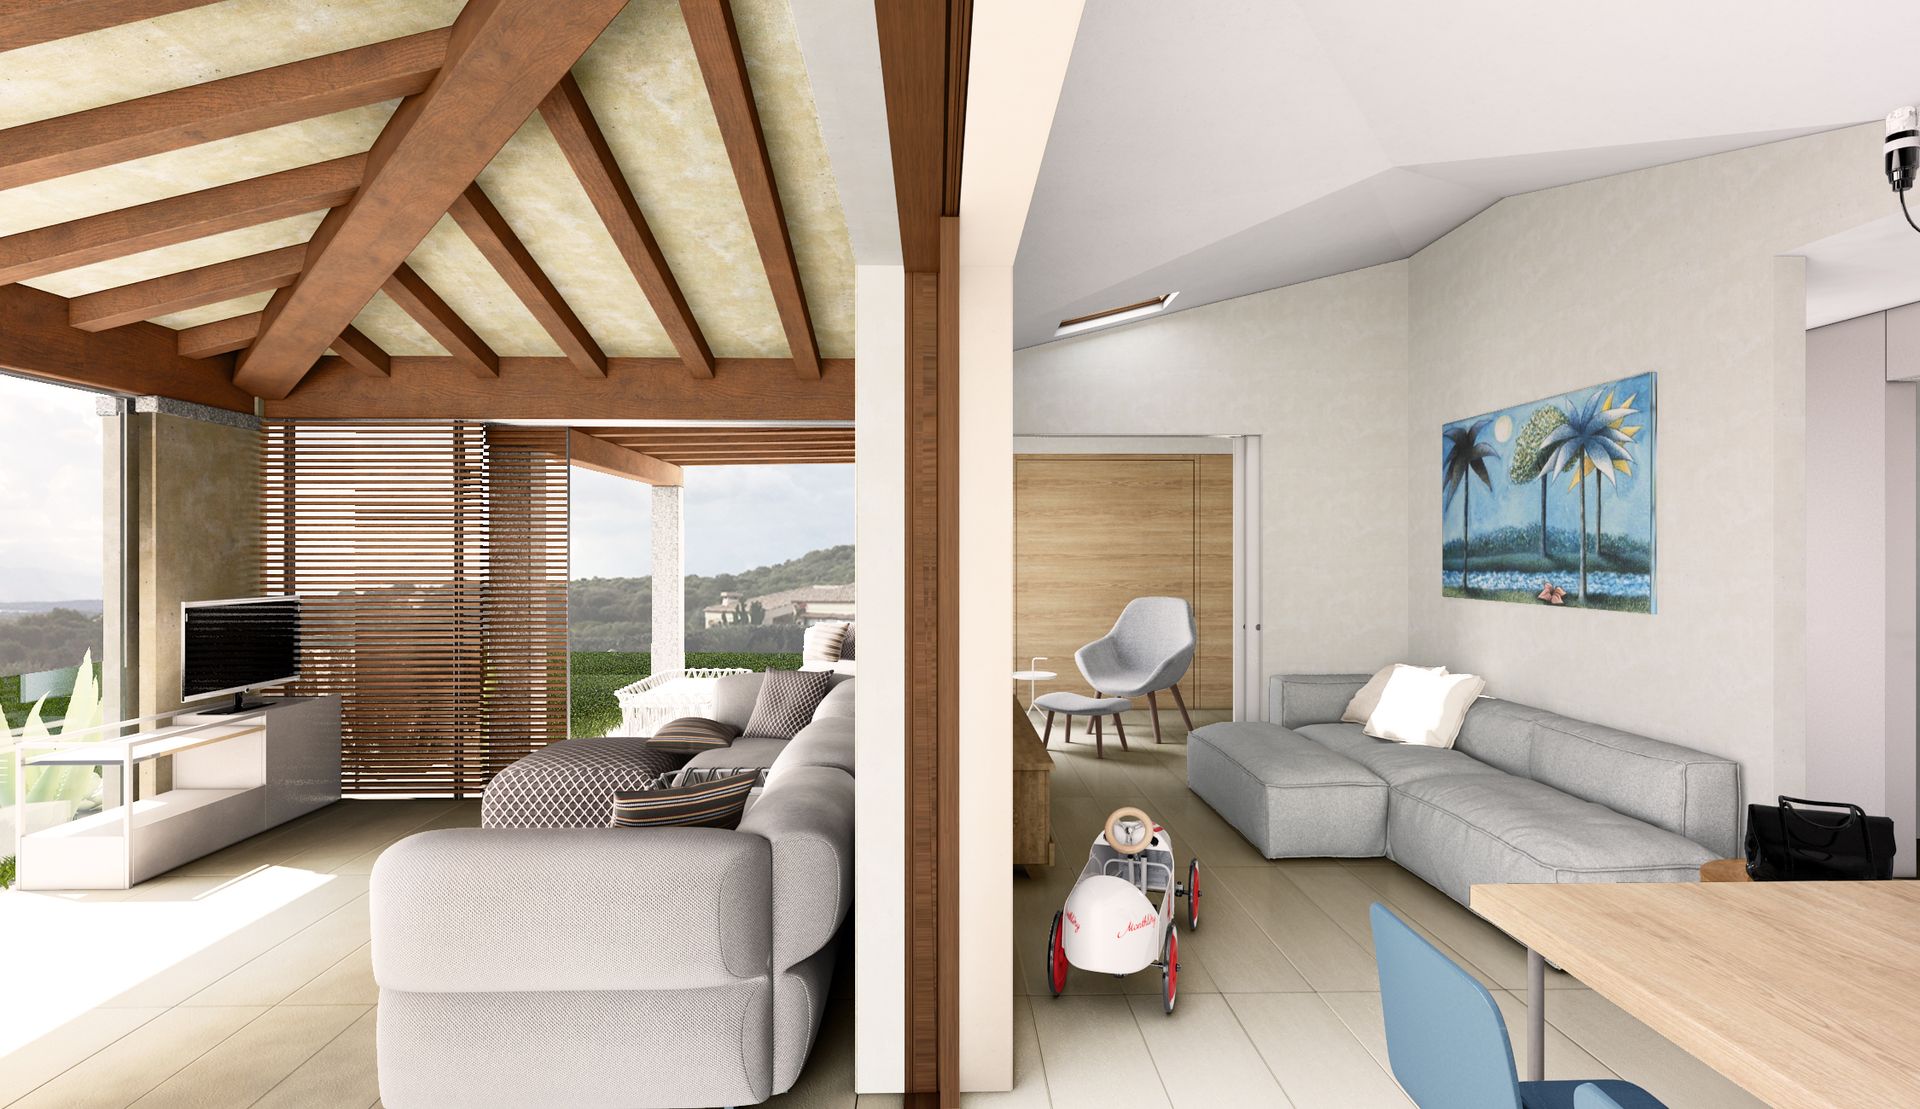 Progetto interior design, casa vacanze Golfo Aranci, Sardegna, vista isola della Tavolara. Officina Magisafi architettura design - living esterno interno